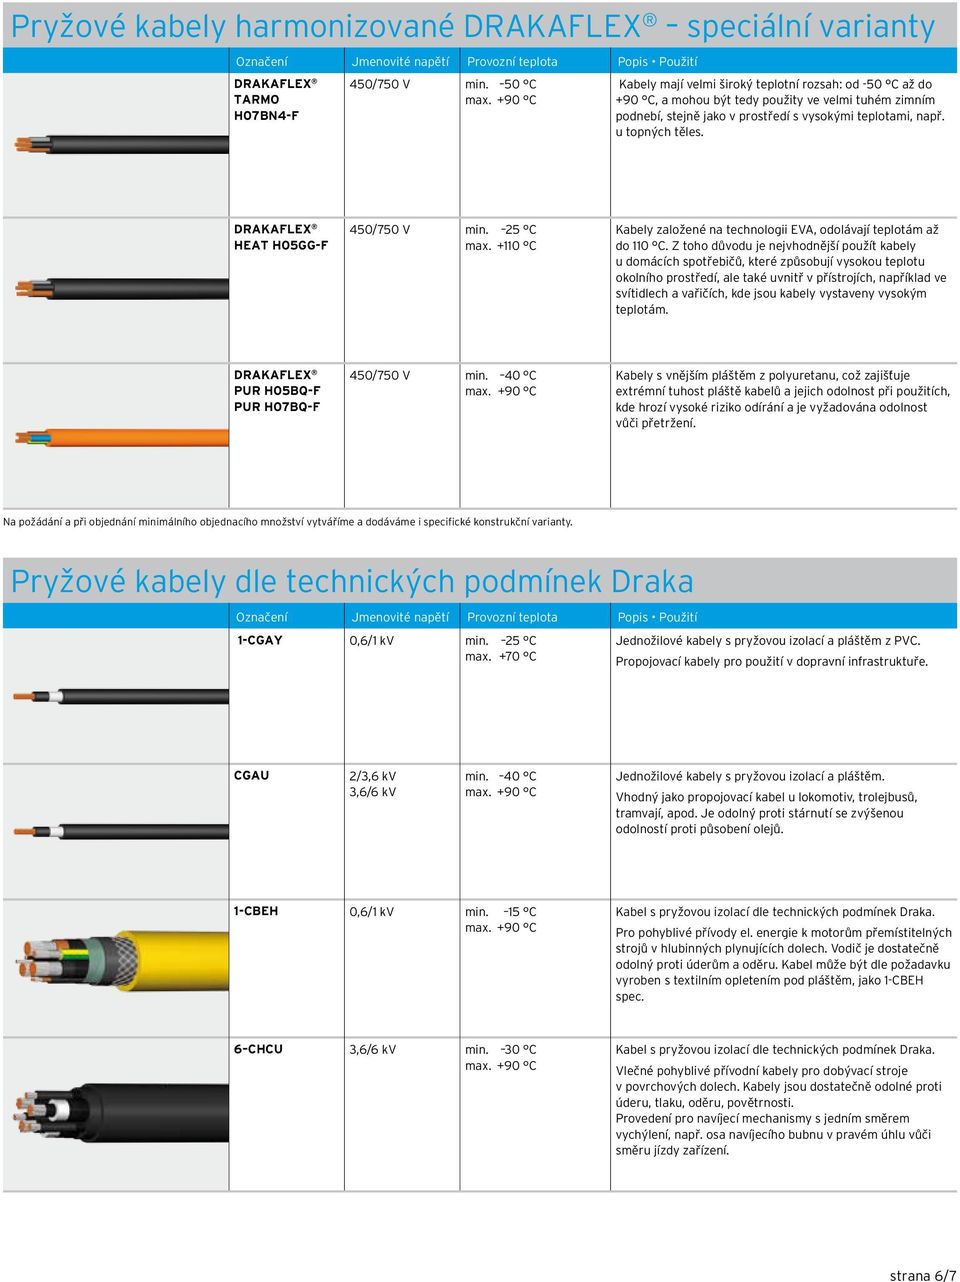 DRAKAFLEX HEAT H05GG-F 450/750 V in. 25 C ax. +110 C Kabely založené na technologii EVA, odolávají teplotá až do 110 C.